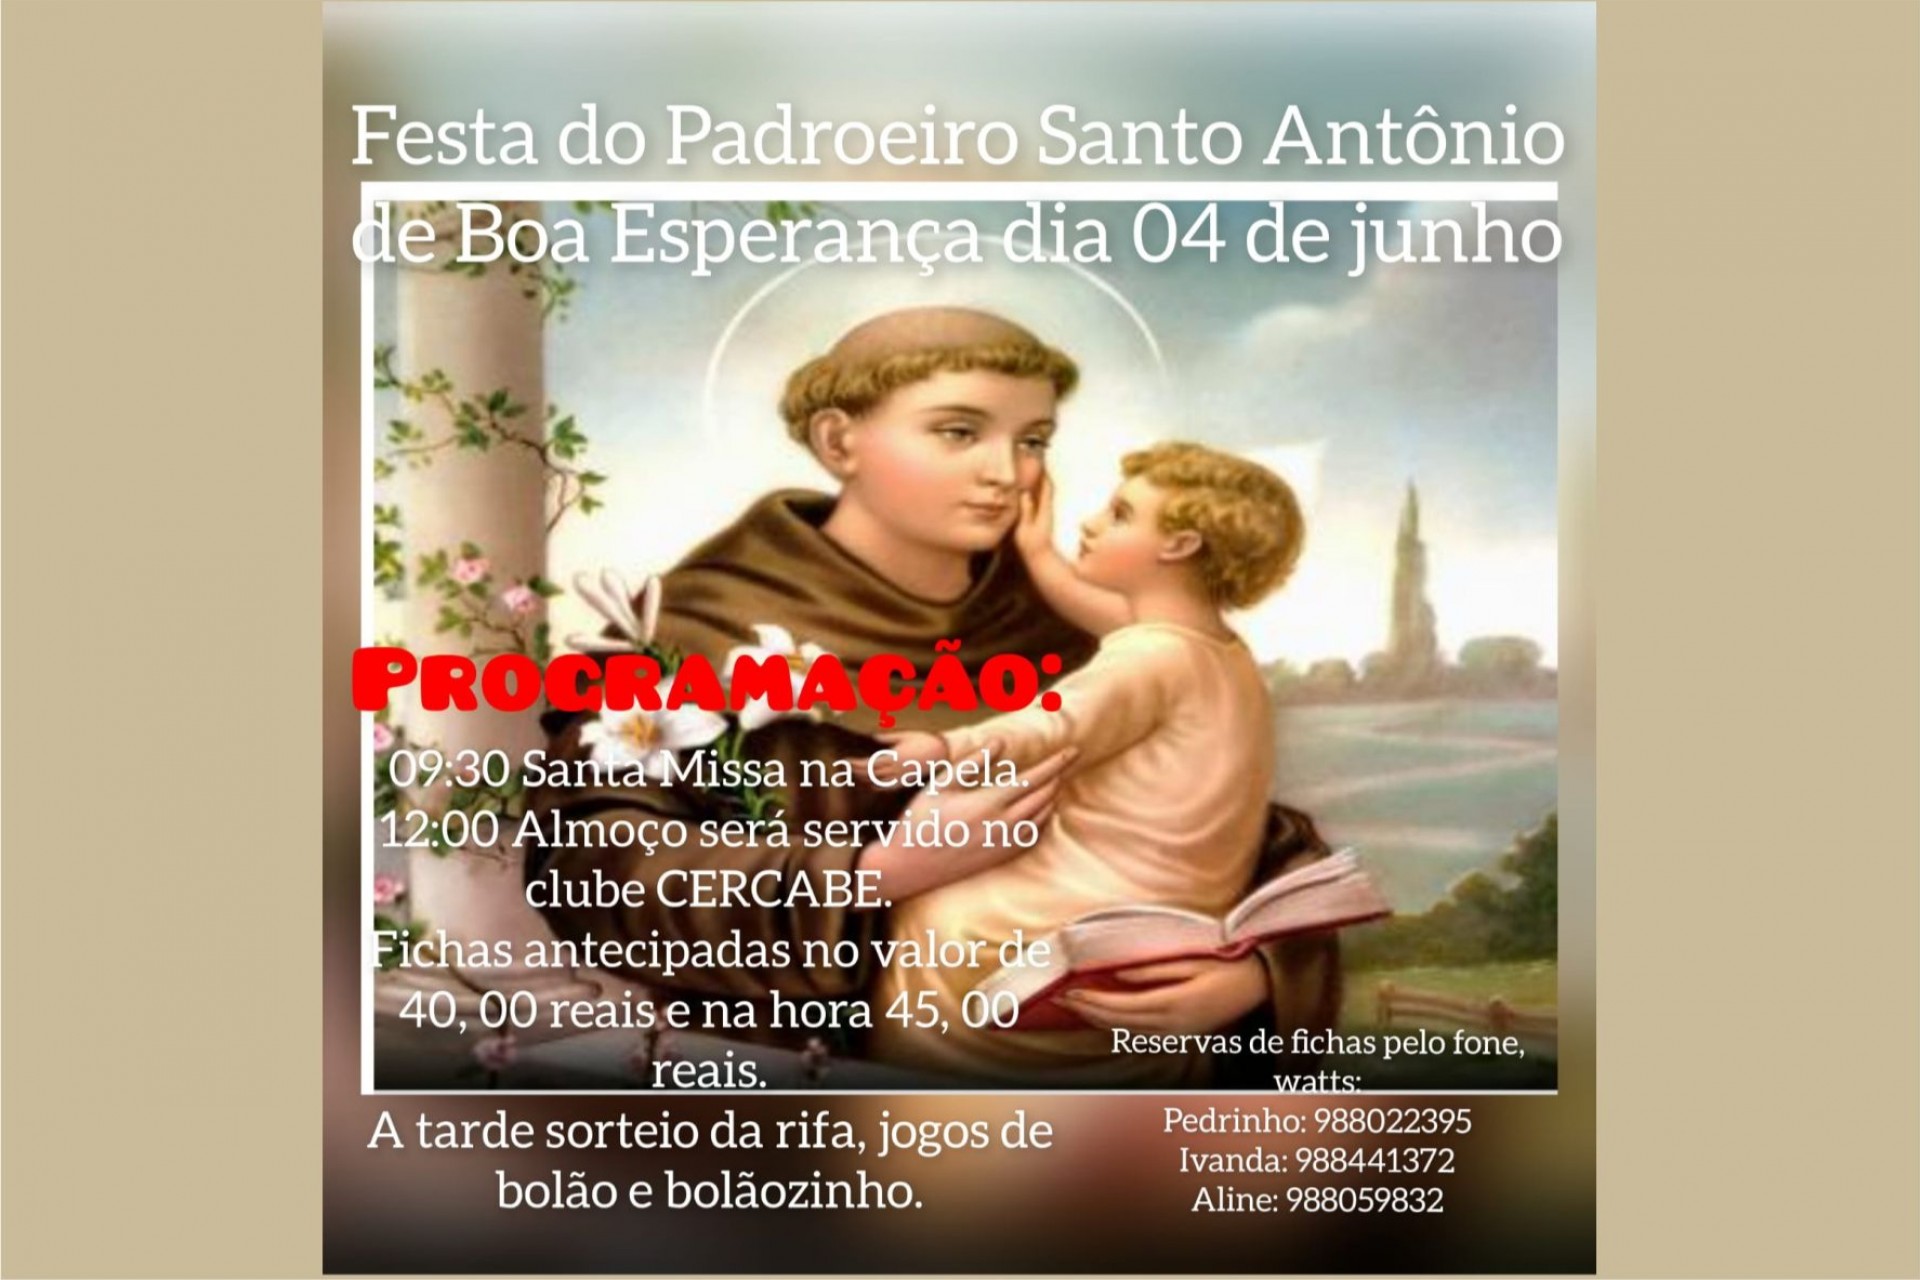 Missal: Festa do Padroeiro Santo Antônio de Boa Esperança será no próximo dia 04 de junho